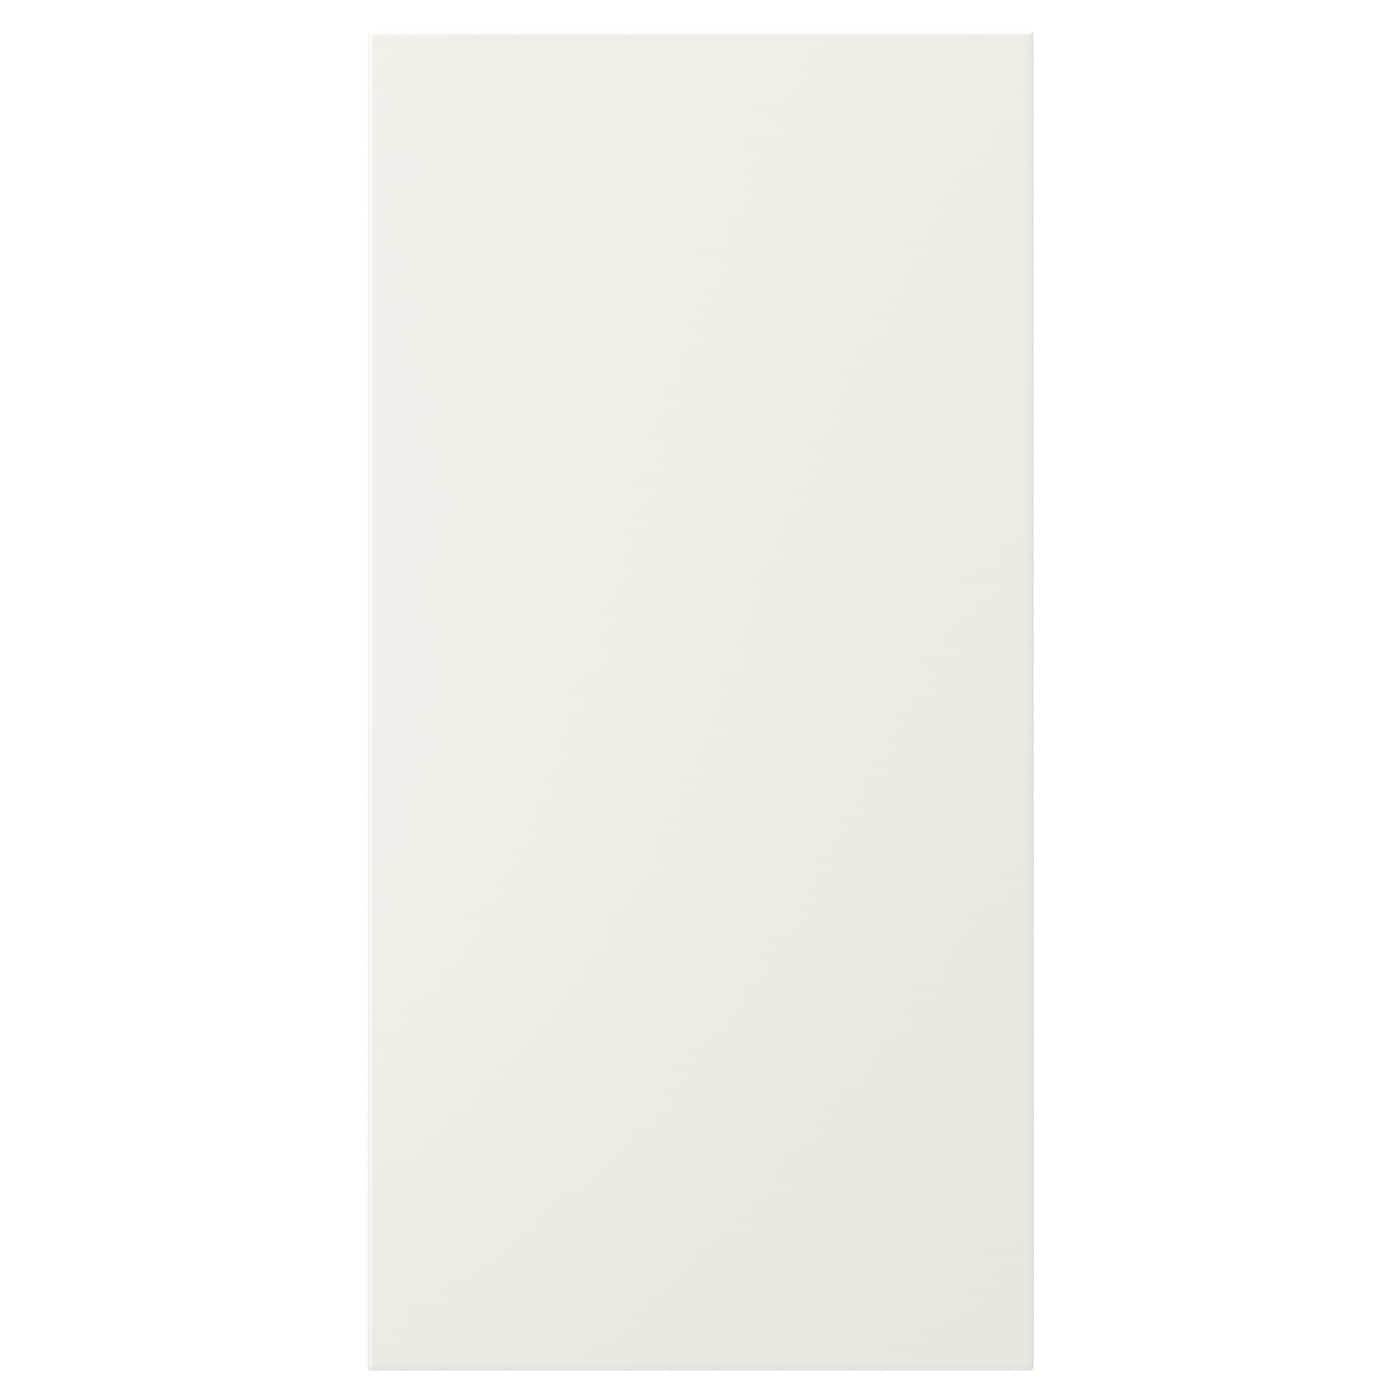 Дверца - IKEA VEDDINGE, 60х30 см, белый, ВЕДИНГЕ ИКЕА